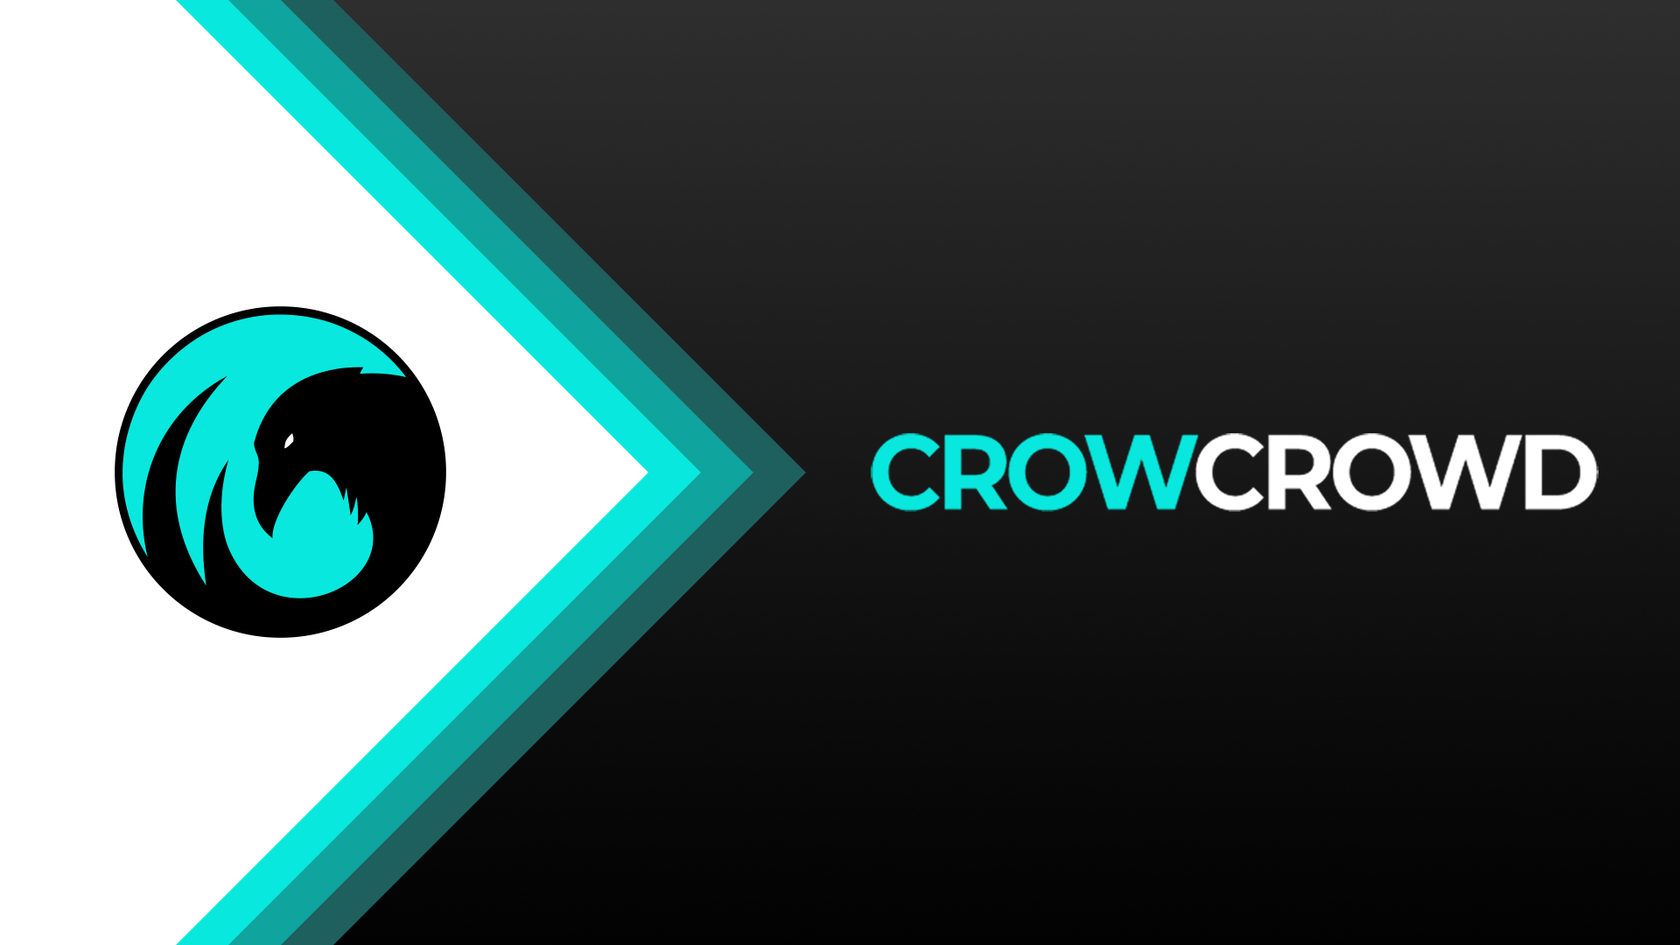 CEO CrowCrowd опроверг слухи о продаже клуба за 3 млн. долларов